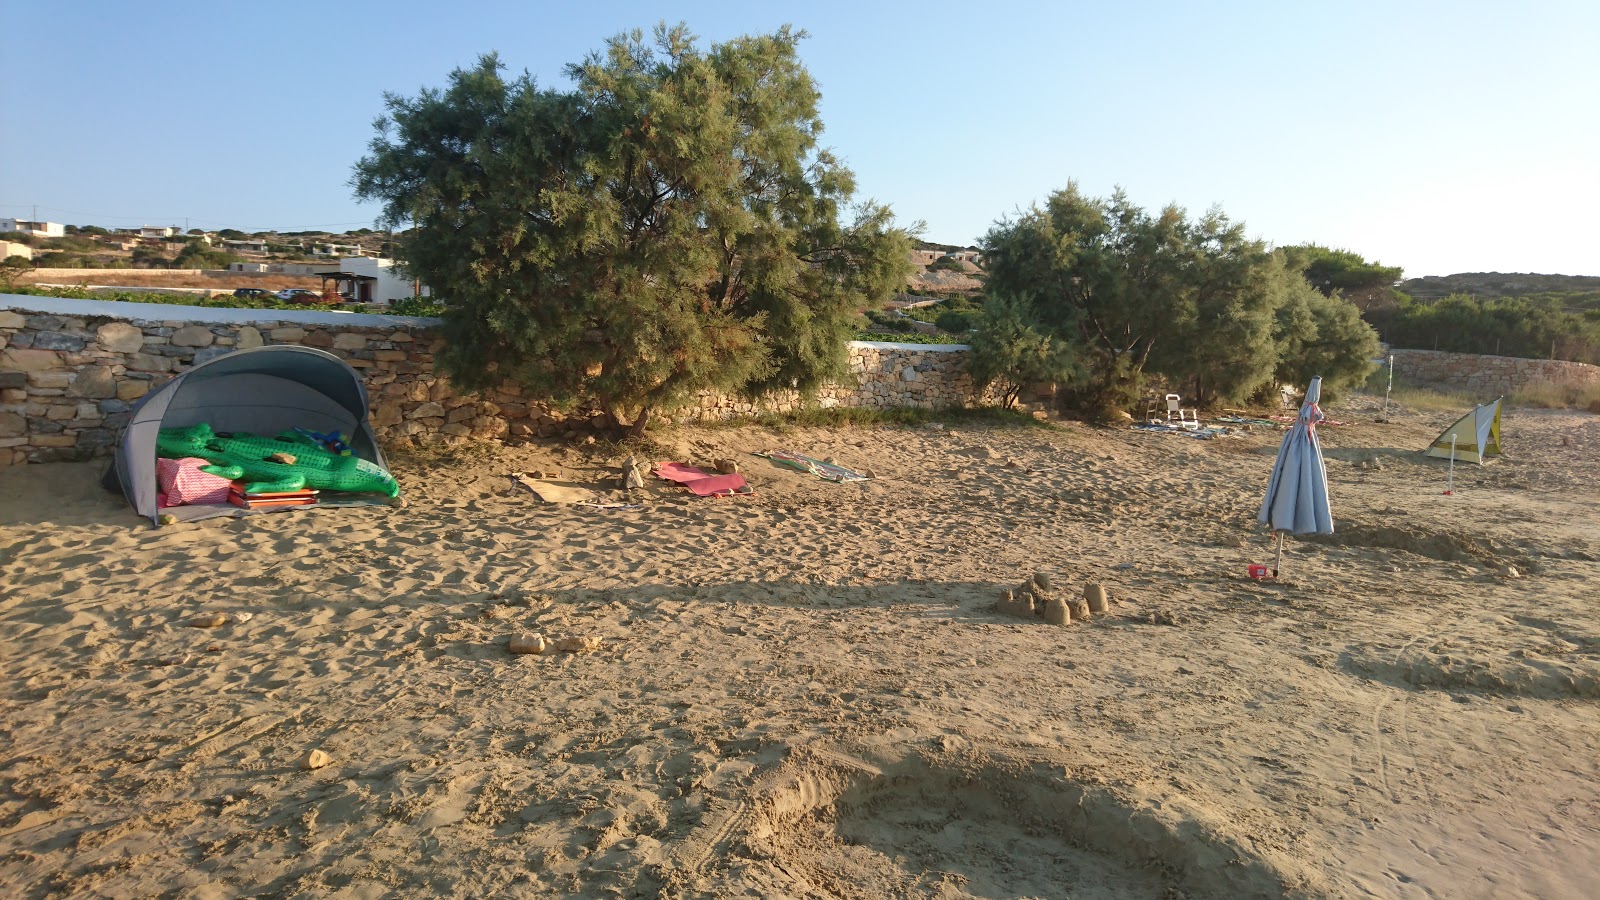 Zdjęcie Fanos beach położony w naturalnym obszarze